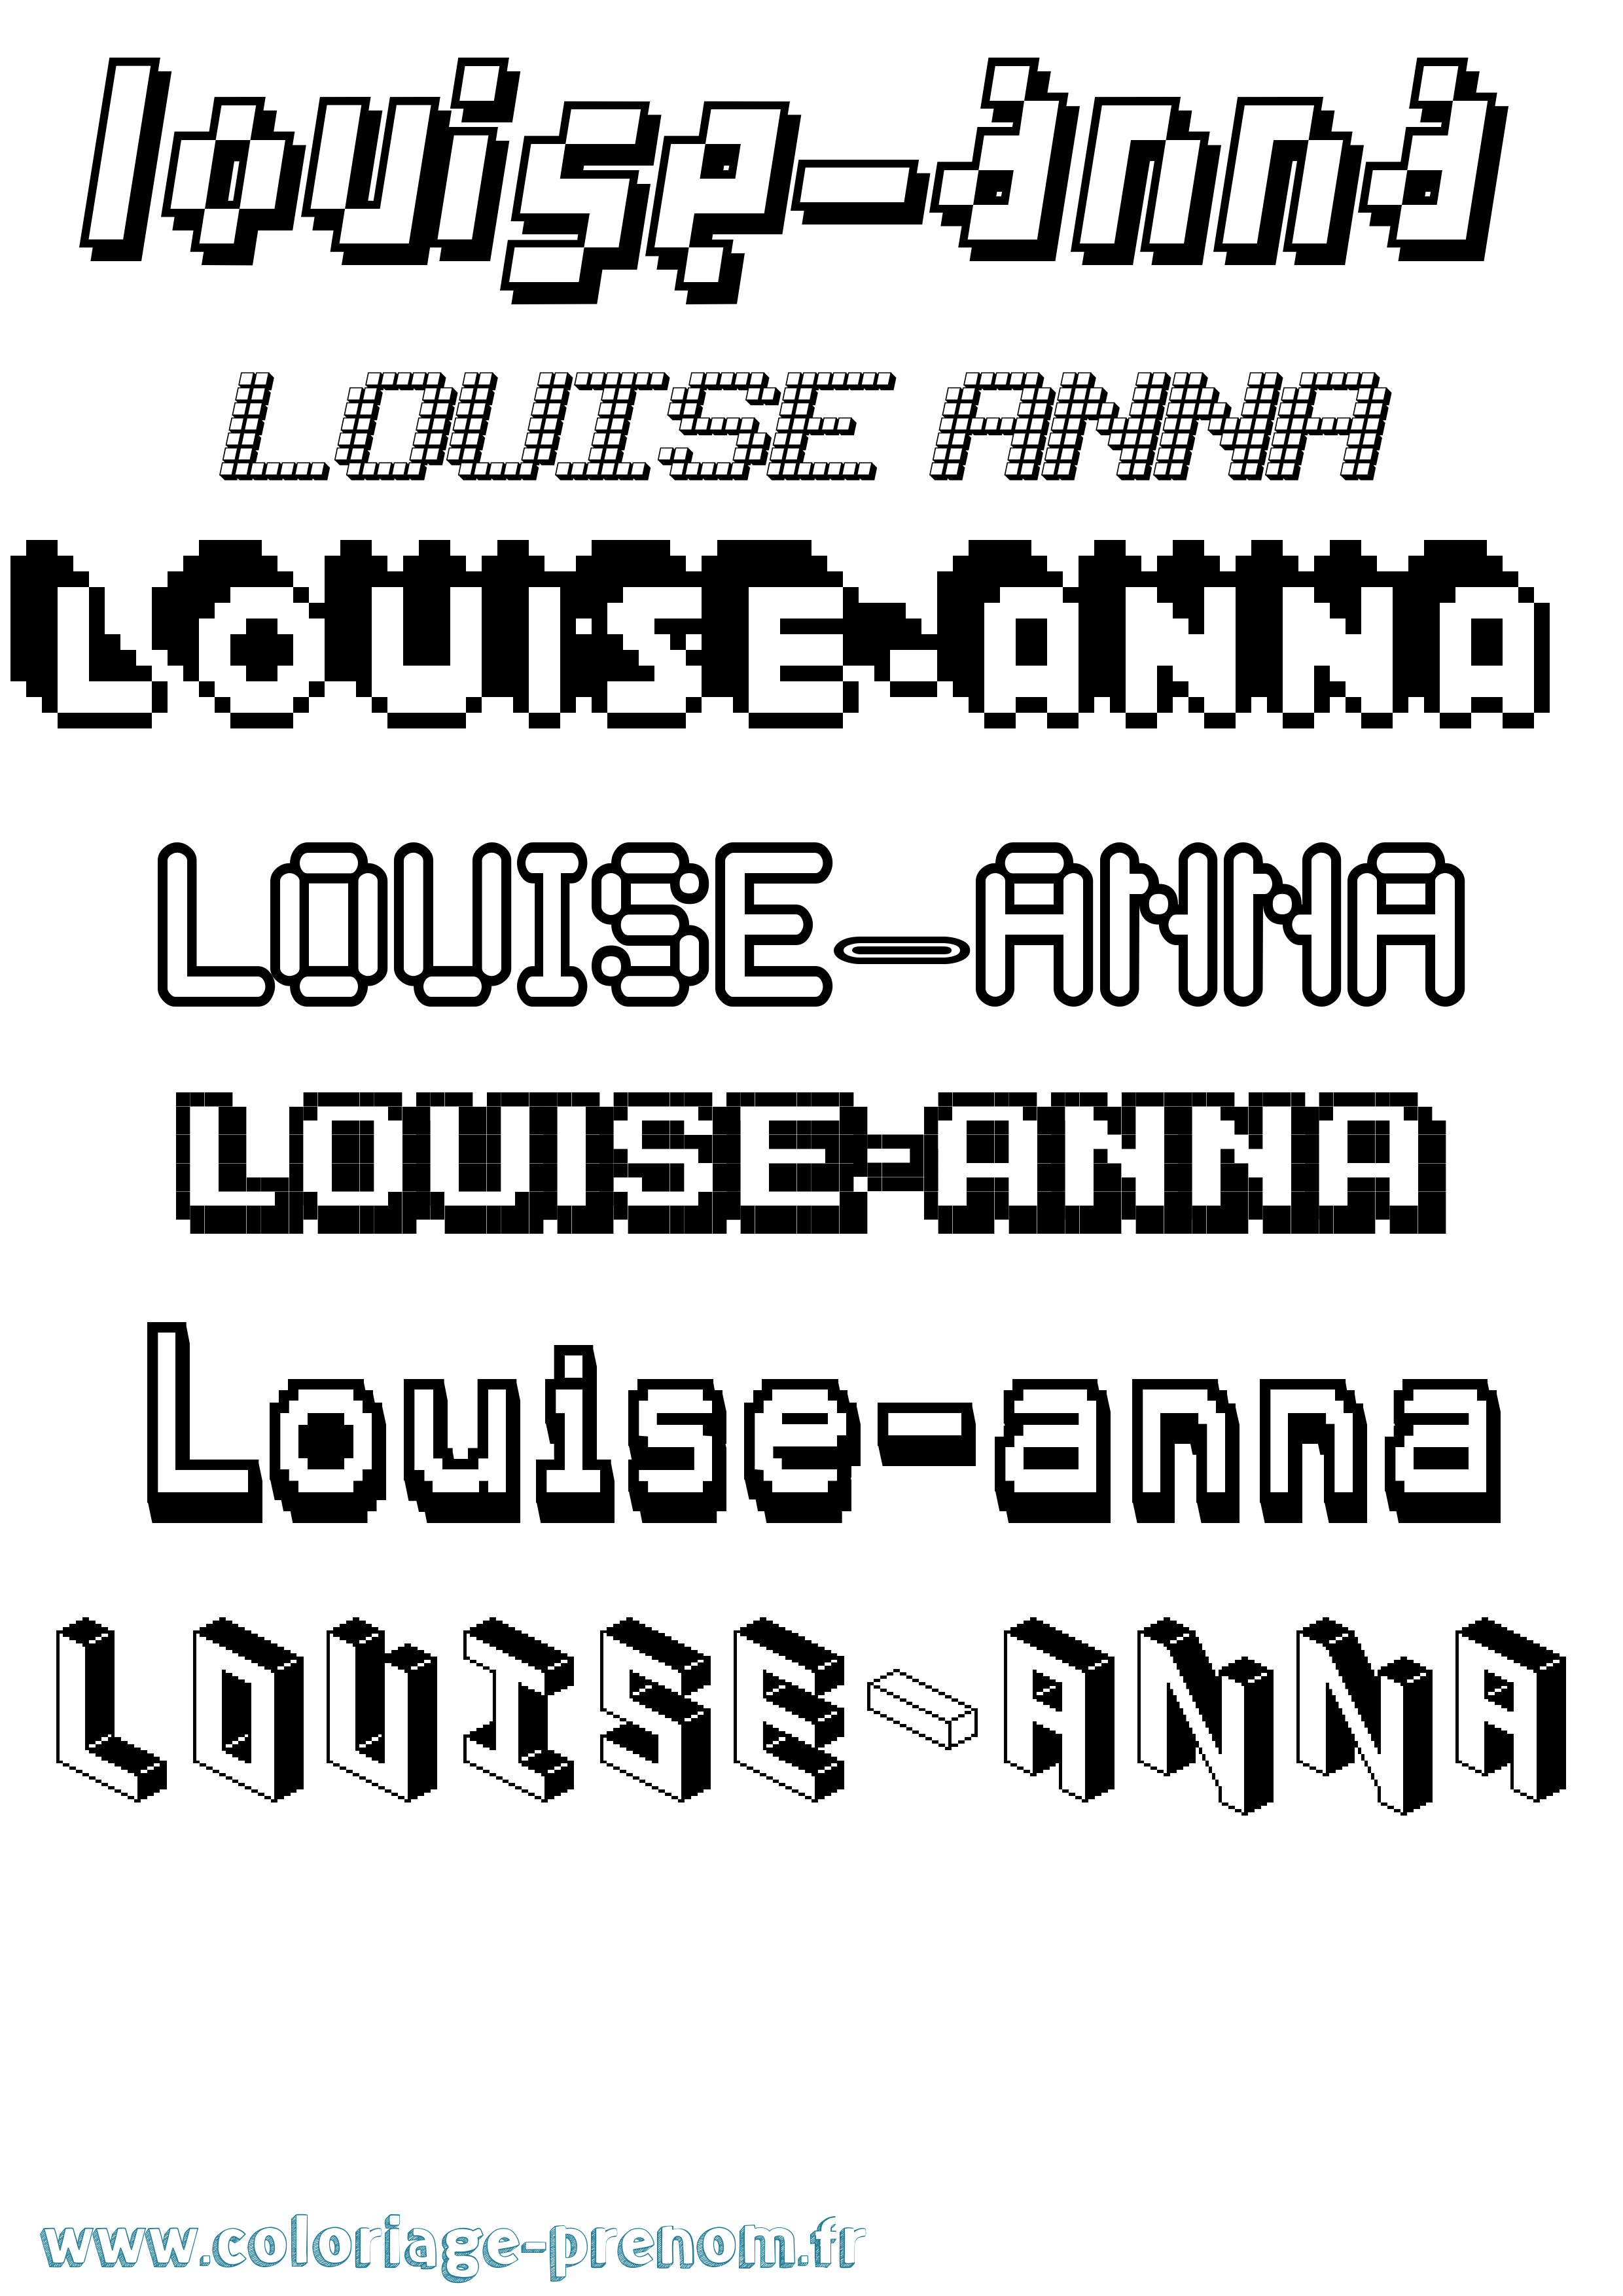 Coloriage prénom Louise-Anna Pixel